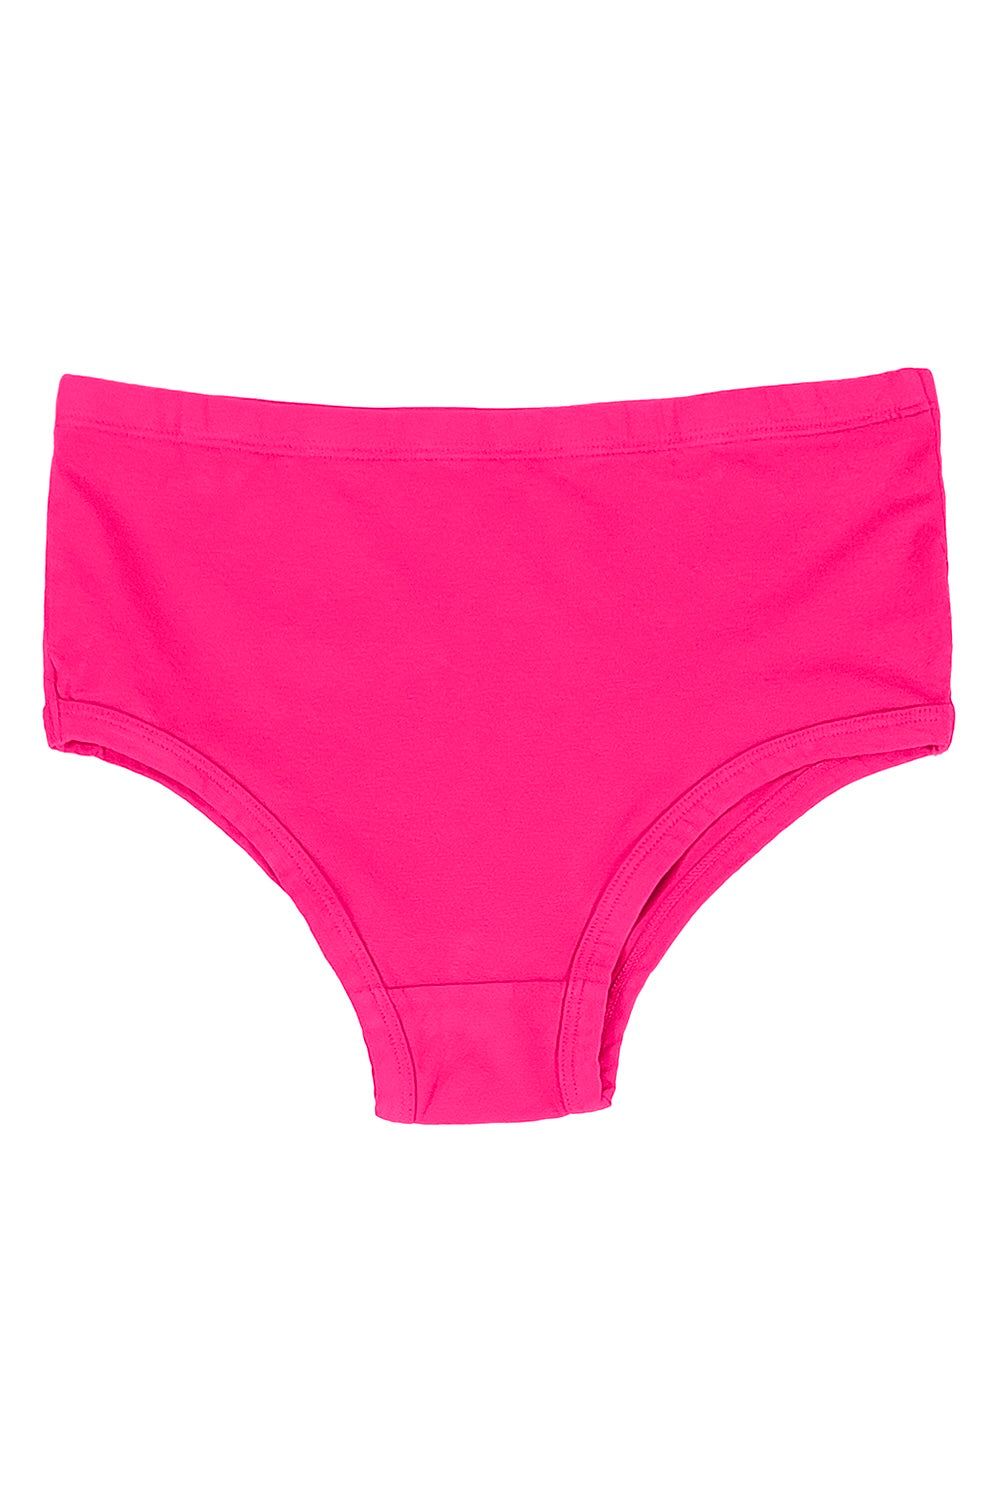 Pink, Women's Underwear & Panties